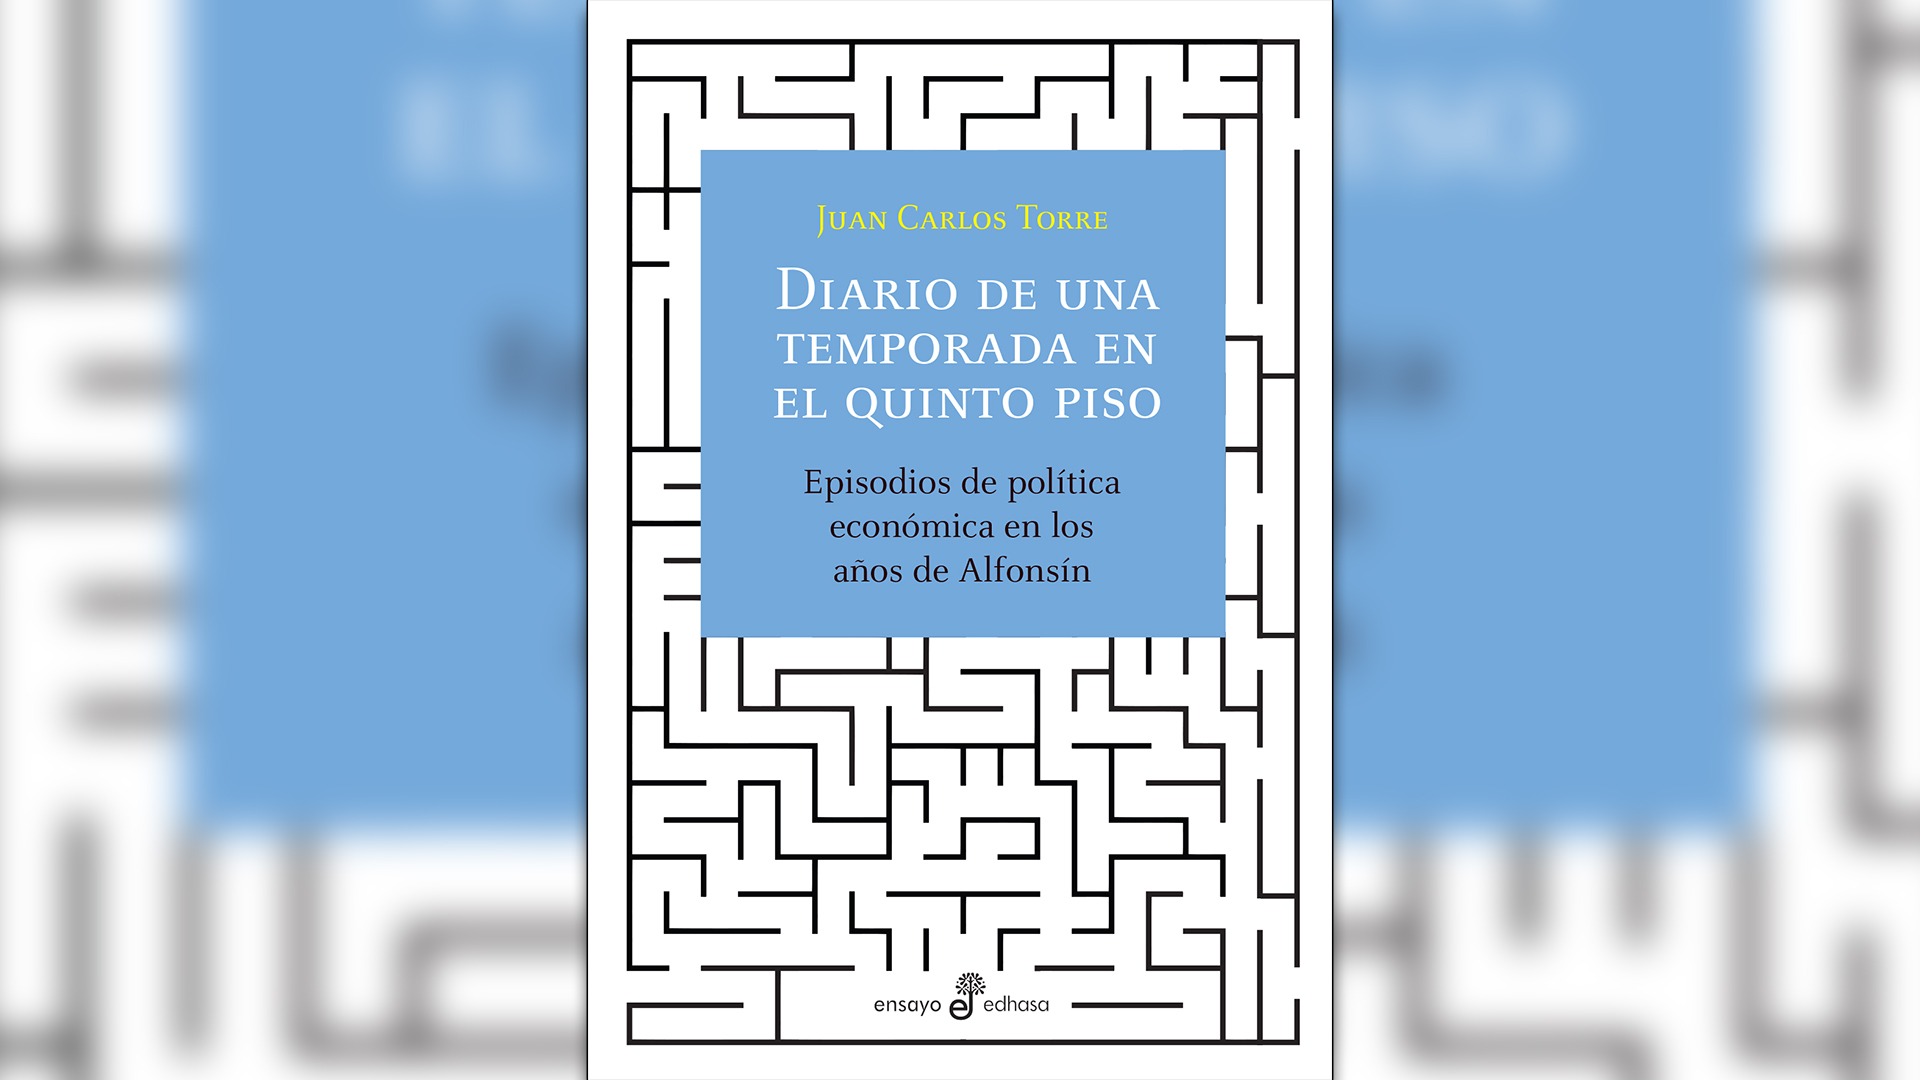 Tapa del libro Diario de una Temporada en el quinto piso, escrito por Juan Carlos Torre, que fue funcionario del Ministerio de Economía durante la gestión de Juan Vital Sourrouille